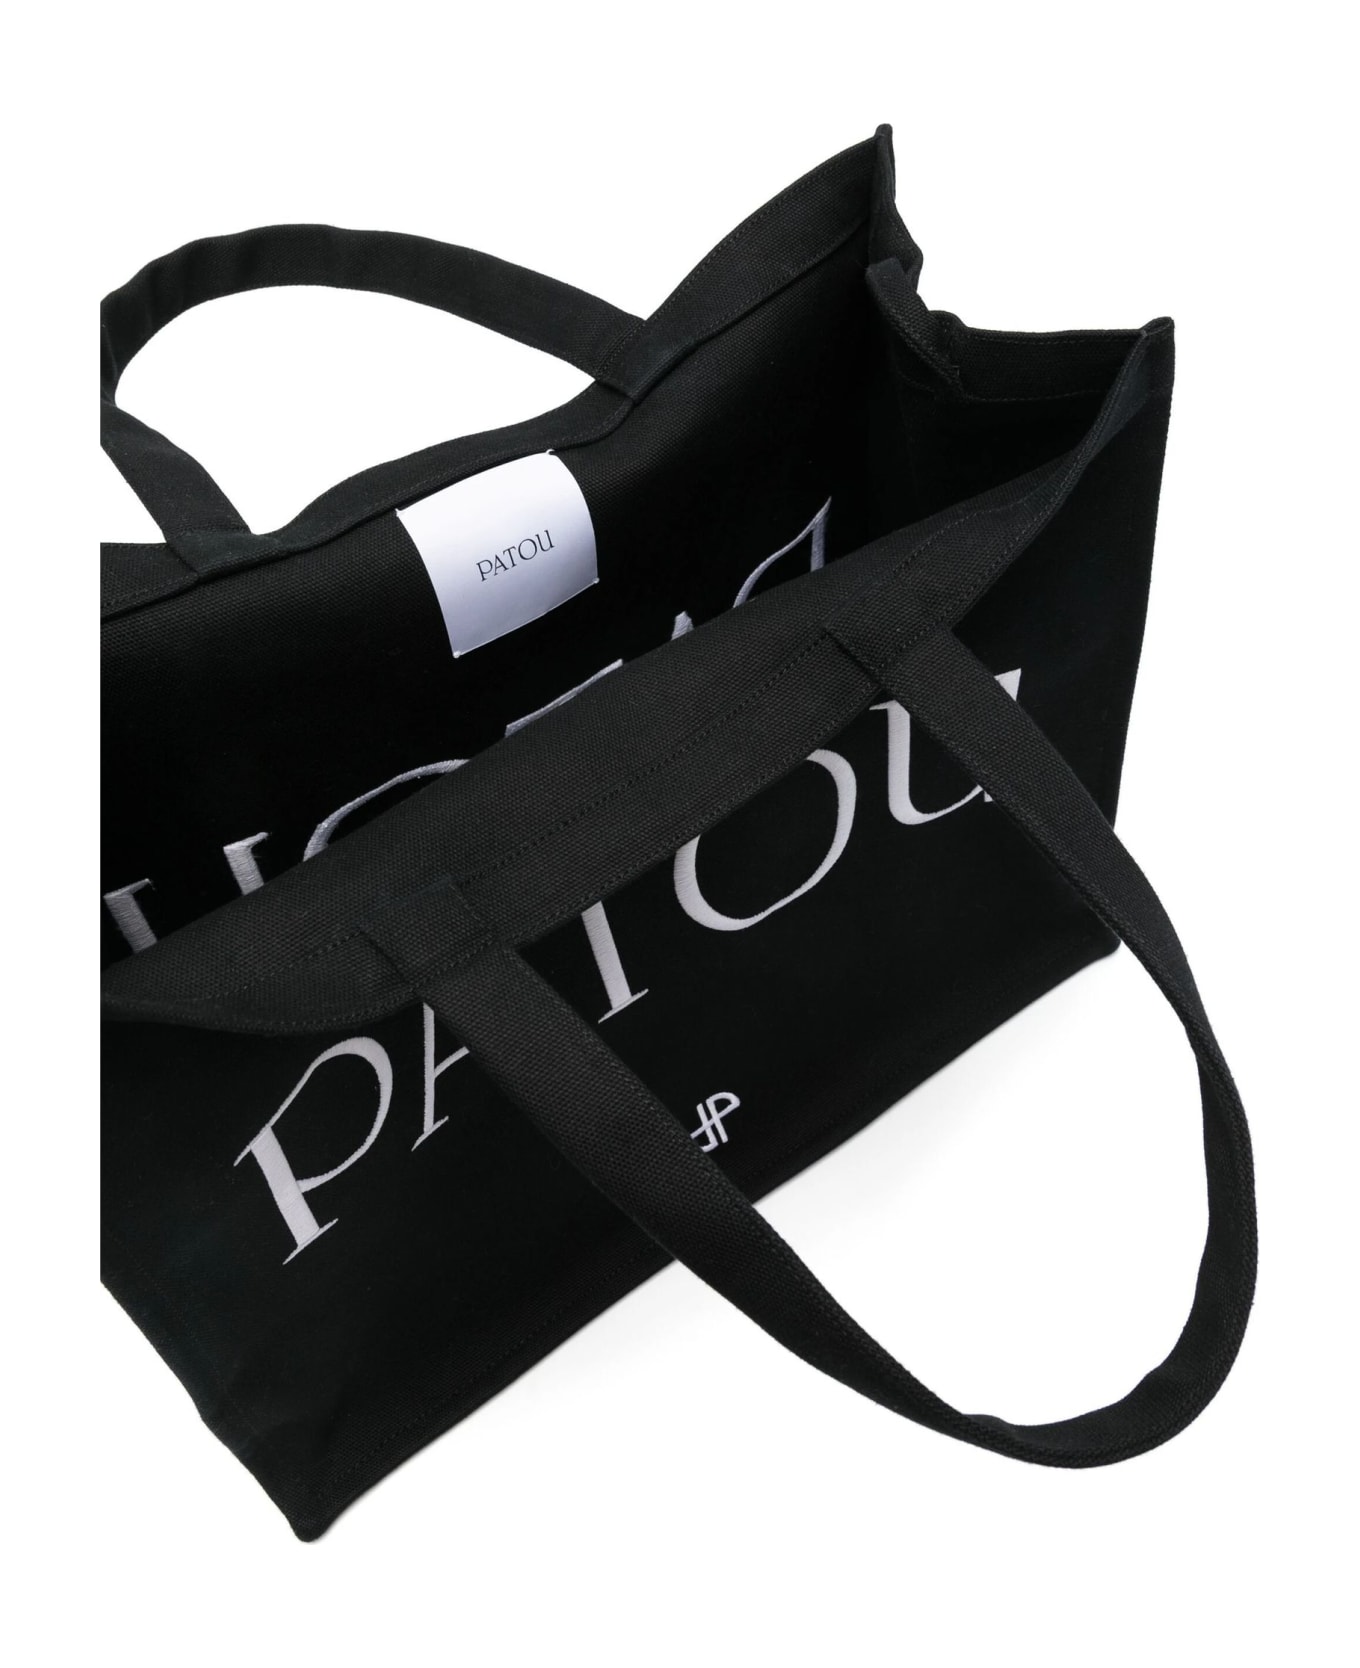 Patou Black Organic Cotton Tote Bag - Black